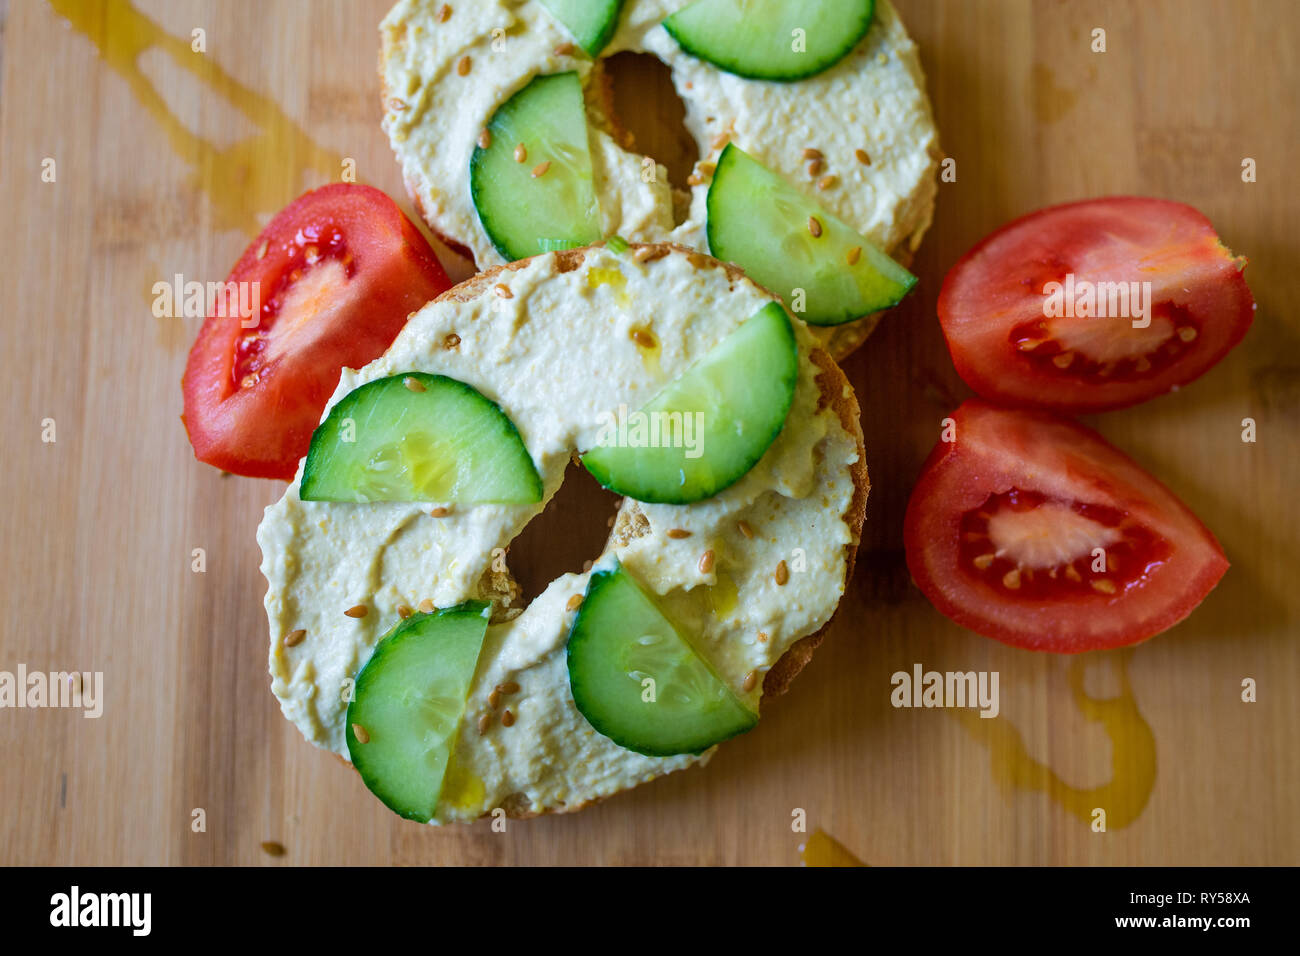 Cibo vegan. Un bagel con hummus, humous, hommous e cetriolo, vegano vegetariano, cibo sano la colazione o il pranzo su una tavola di legno Foto Stock